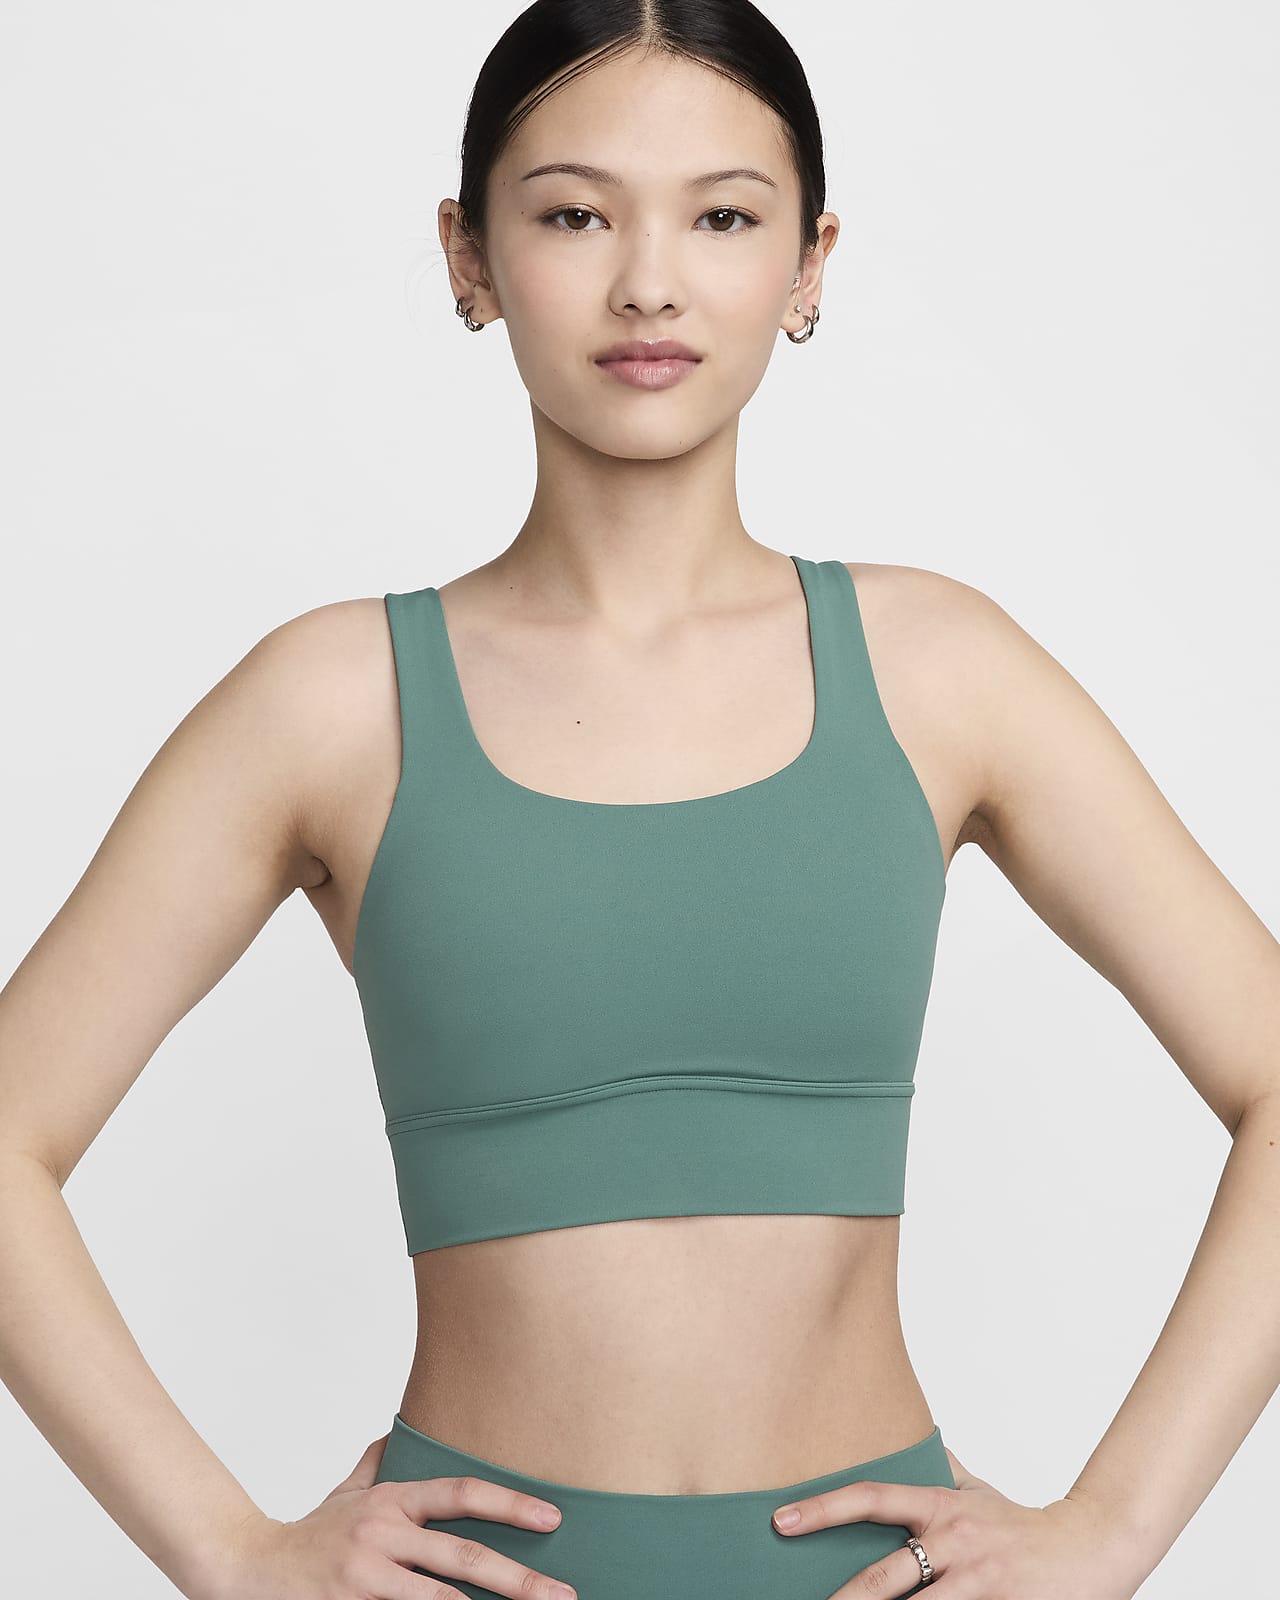 Nike Zenvy Longline 女子柔软包裹中强度支撑衬垫速干运动内衣